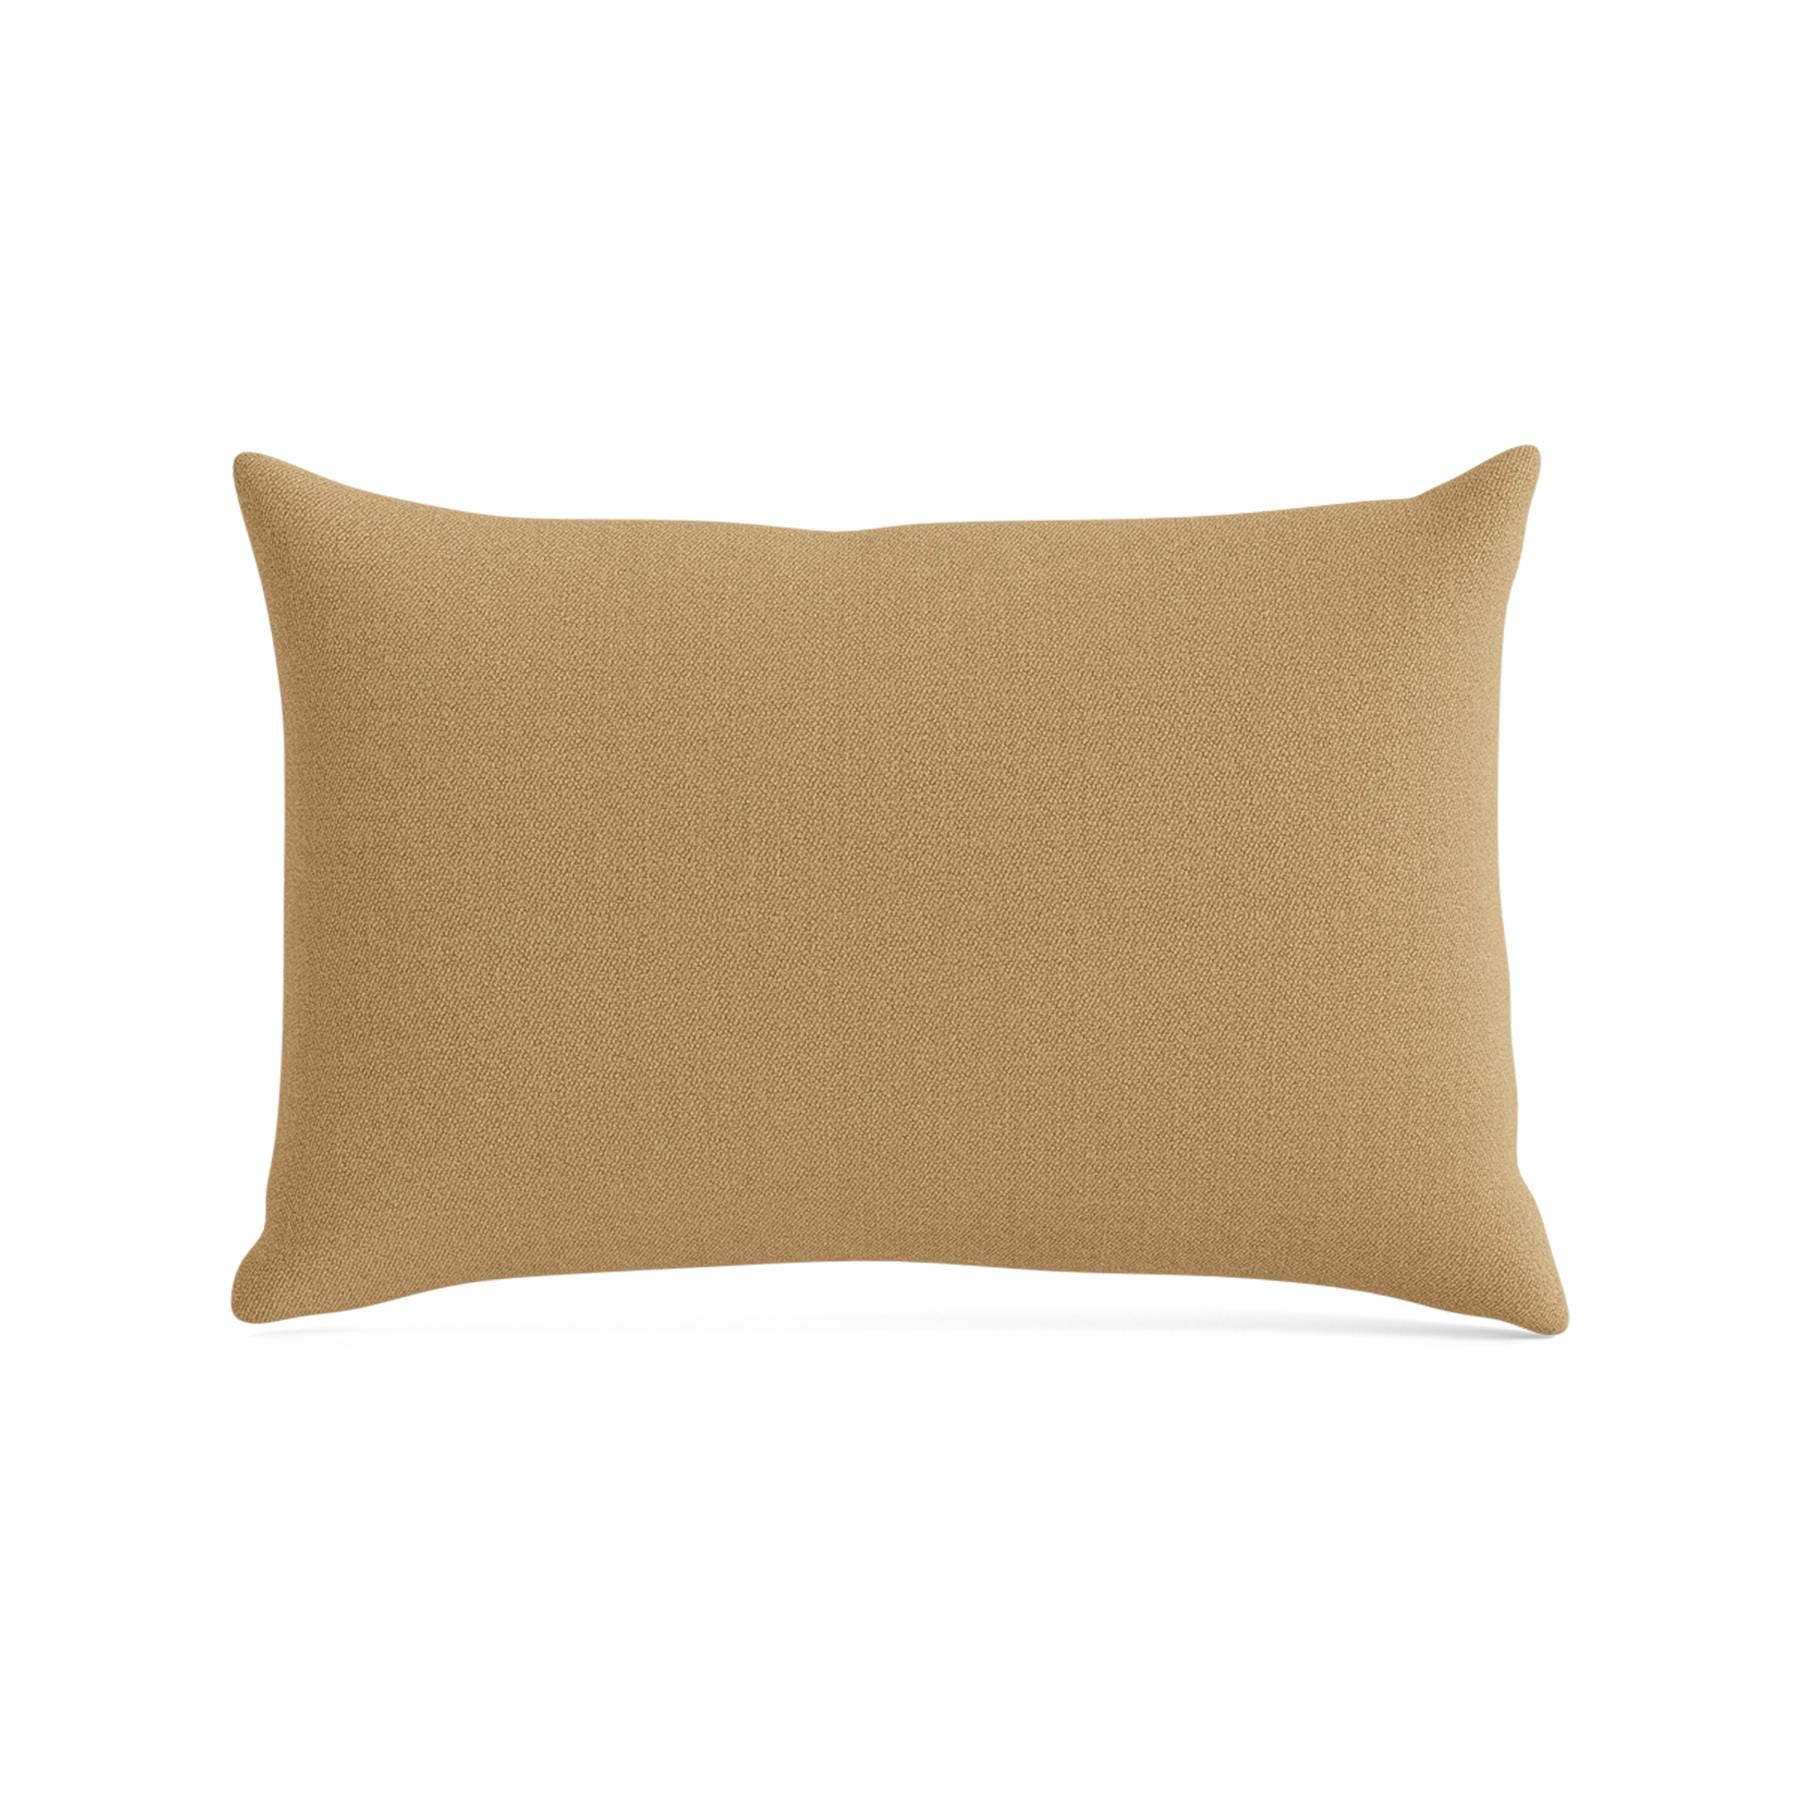 Make Nordic Pillow 40cmx60cm Vidar 333 Down And Fibers Brown